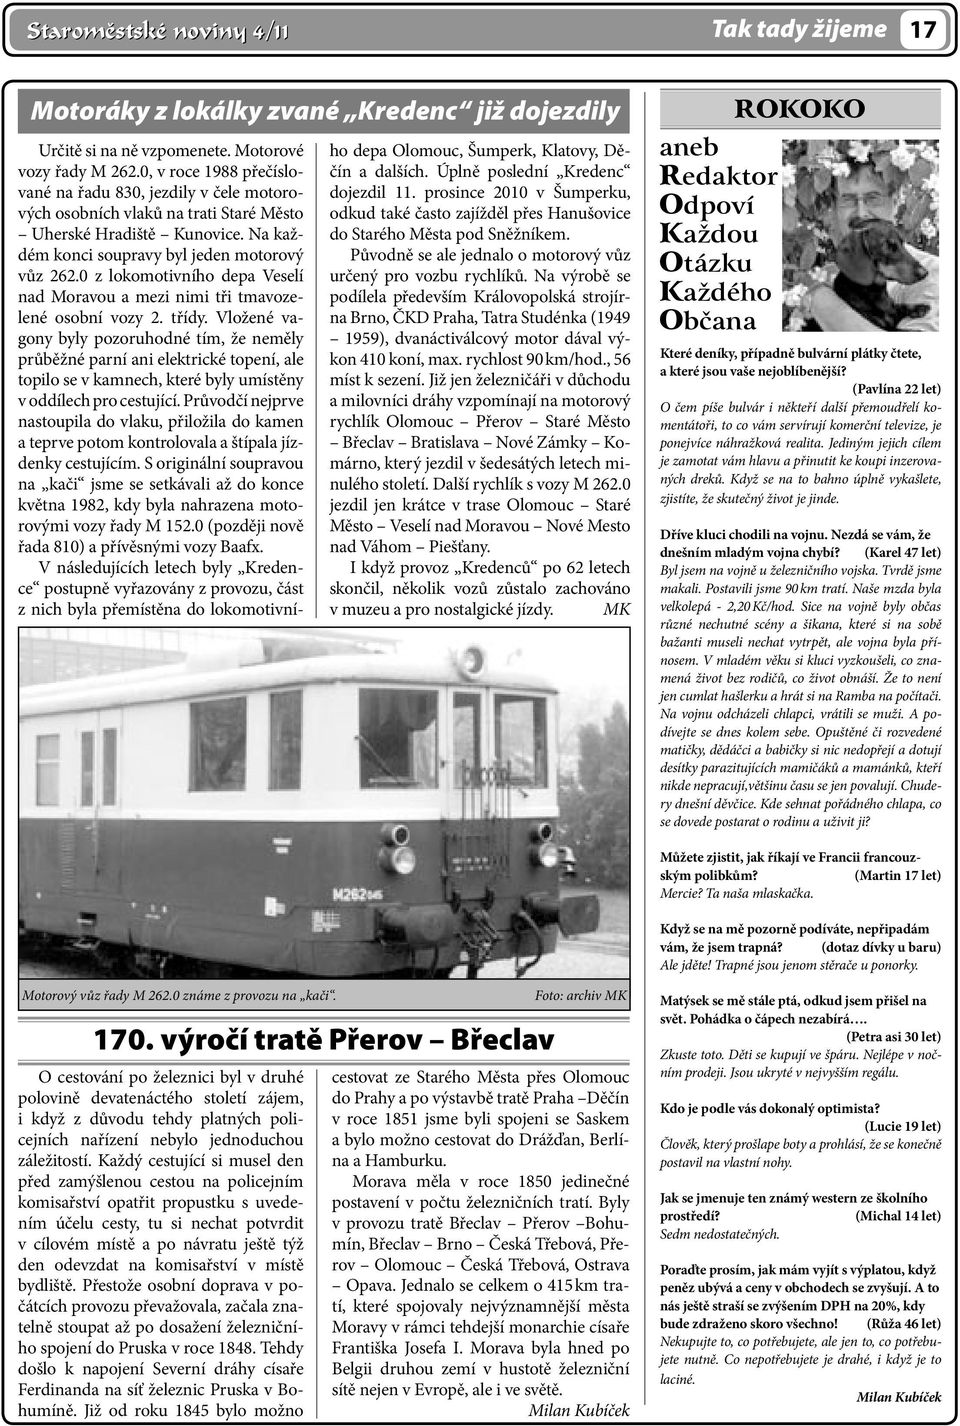 0 z lokomotivního depa Veselí nad Moravou a mezi nimi tři tmavozelené osobní vozy 2. třídy.